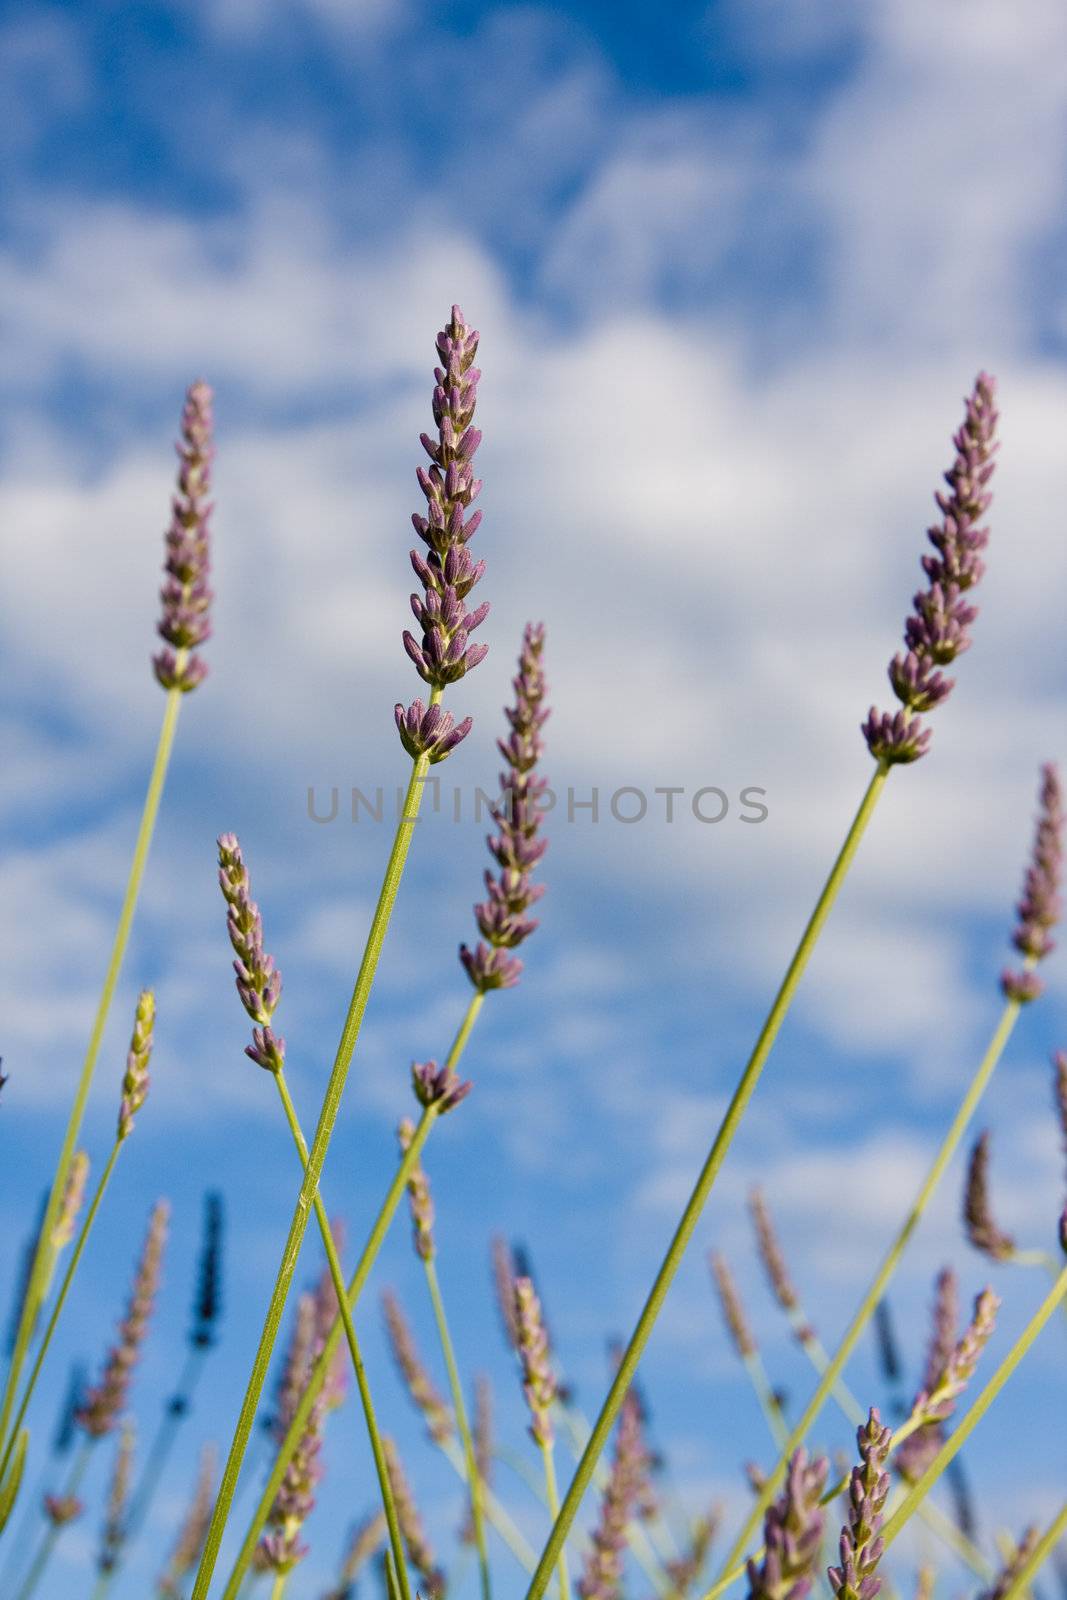 Wild lavendar flower in natural surroundings against blue sky